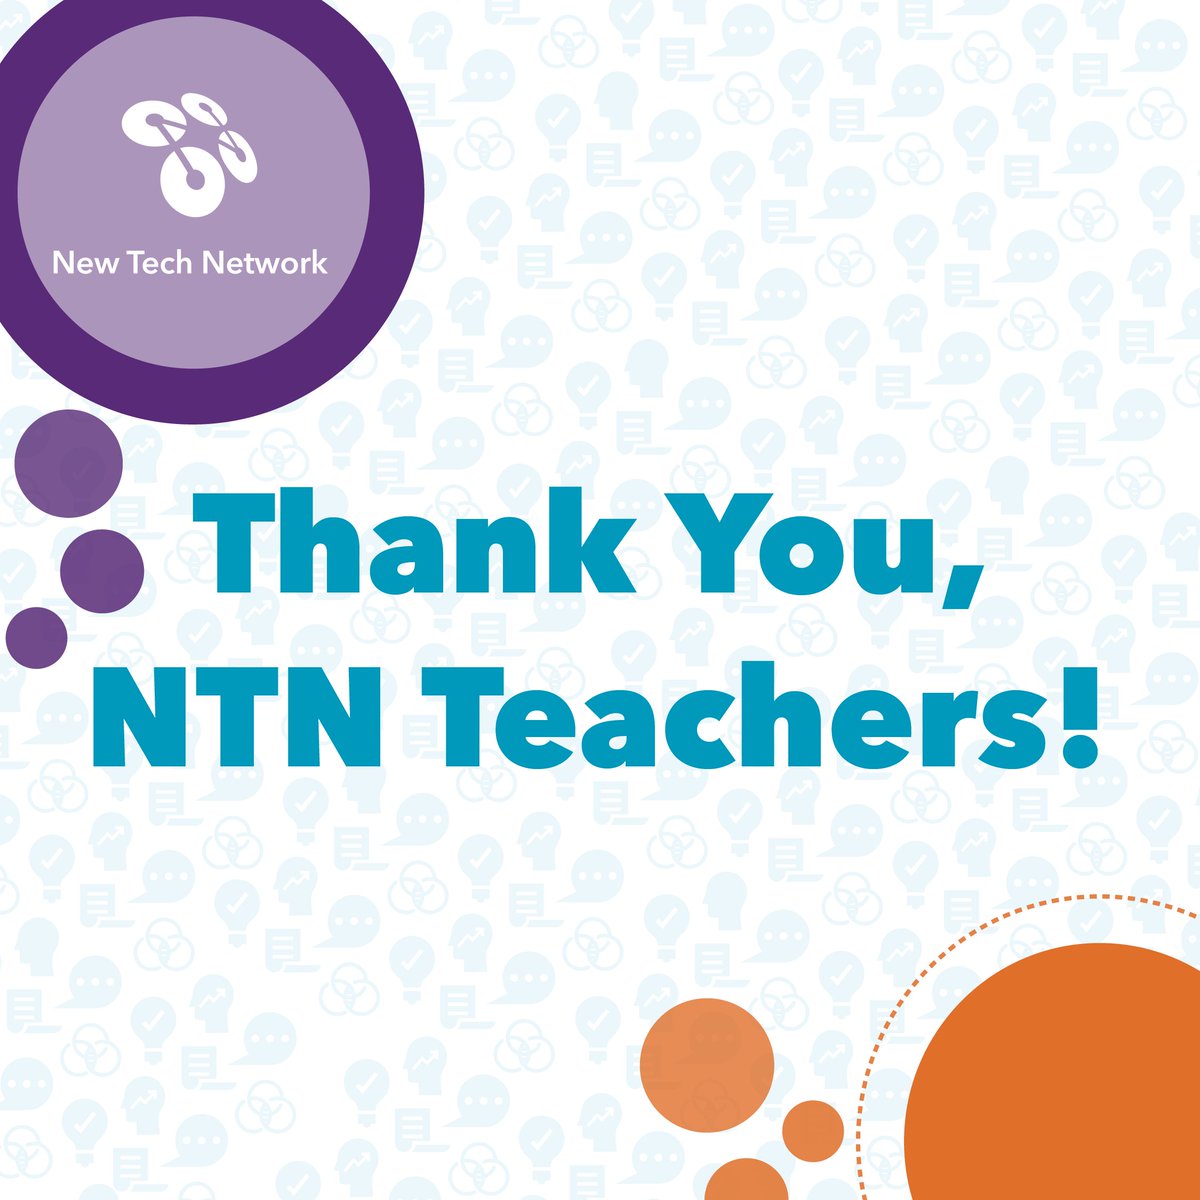 It is Teacher Appreciation Week, let's celebrate our teachers!